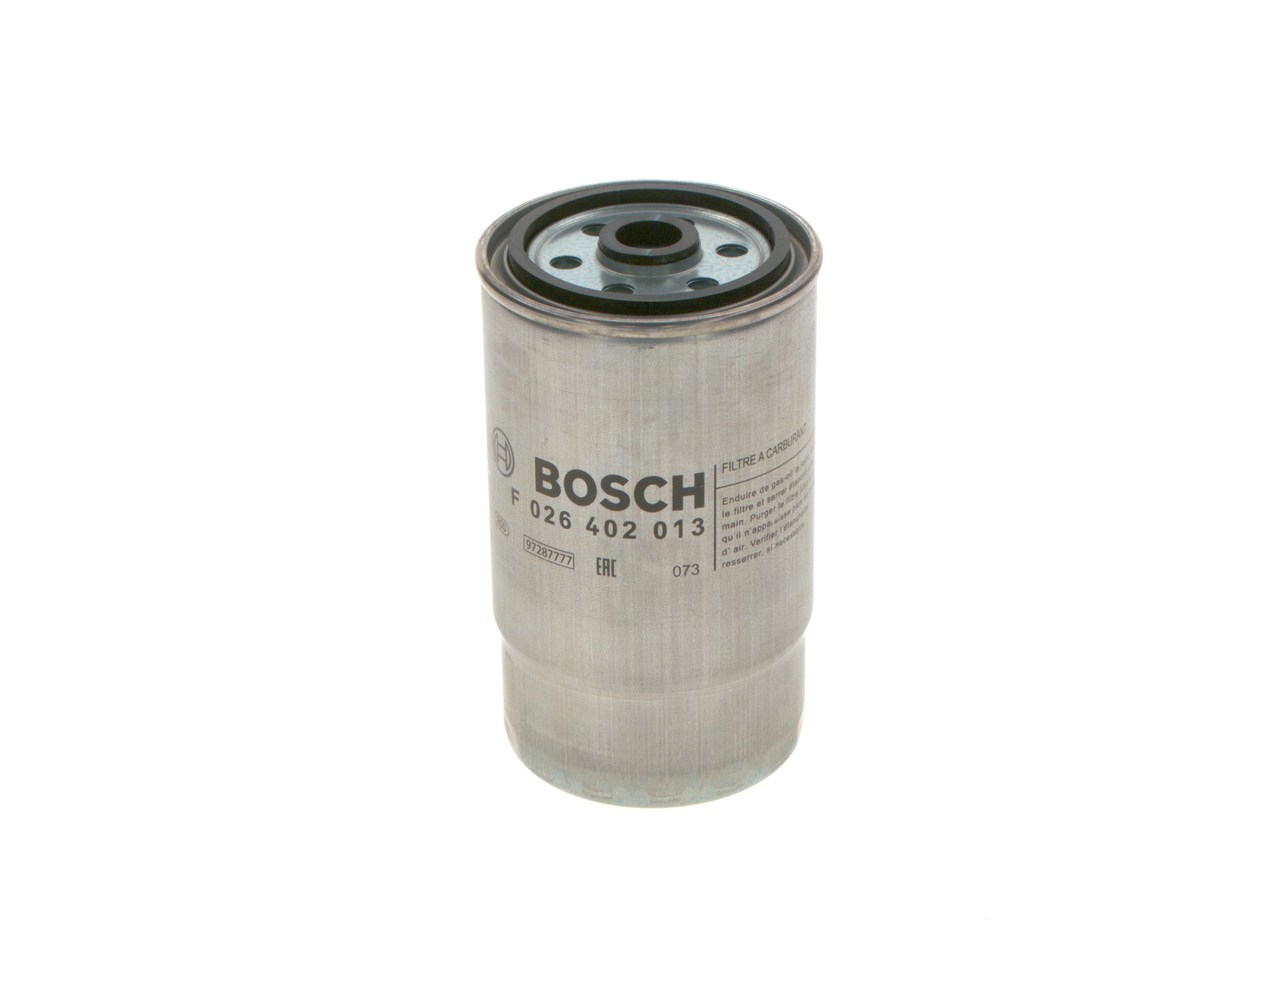 Fuel Filter - F026402013 BOSCH - 1906C2, 5021185195, 71771370